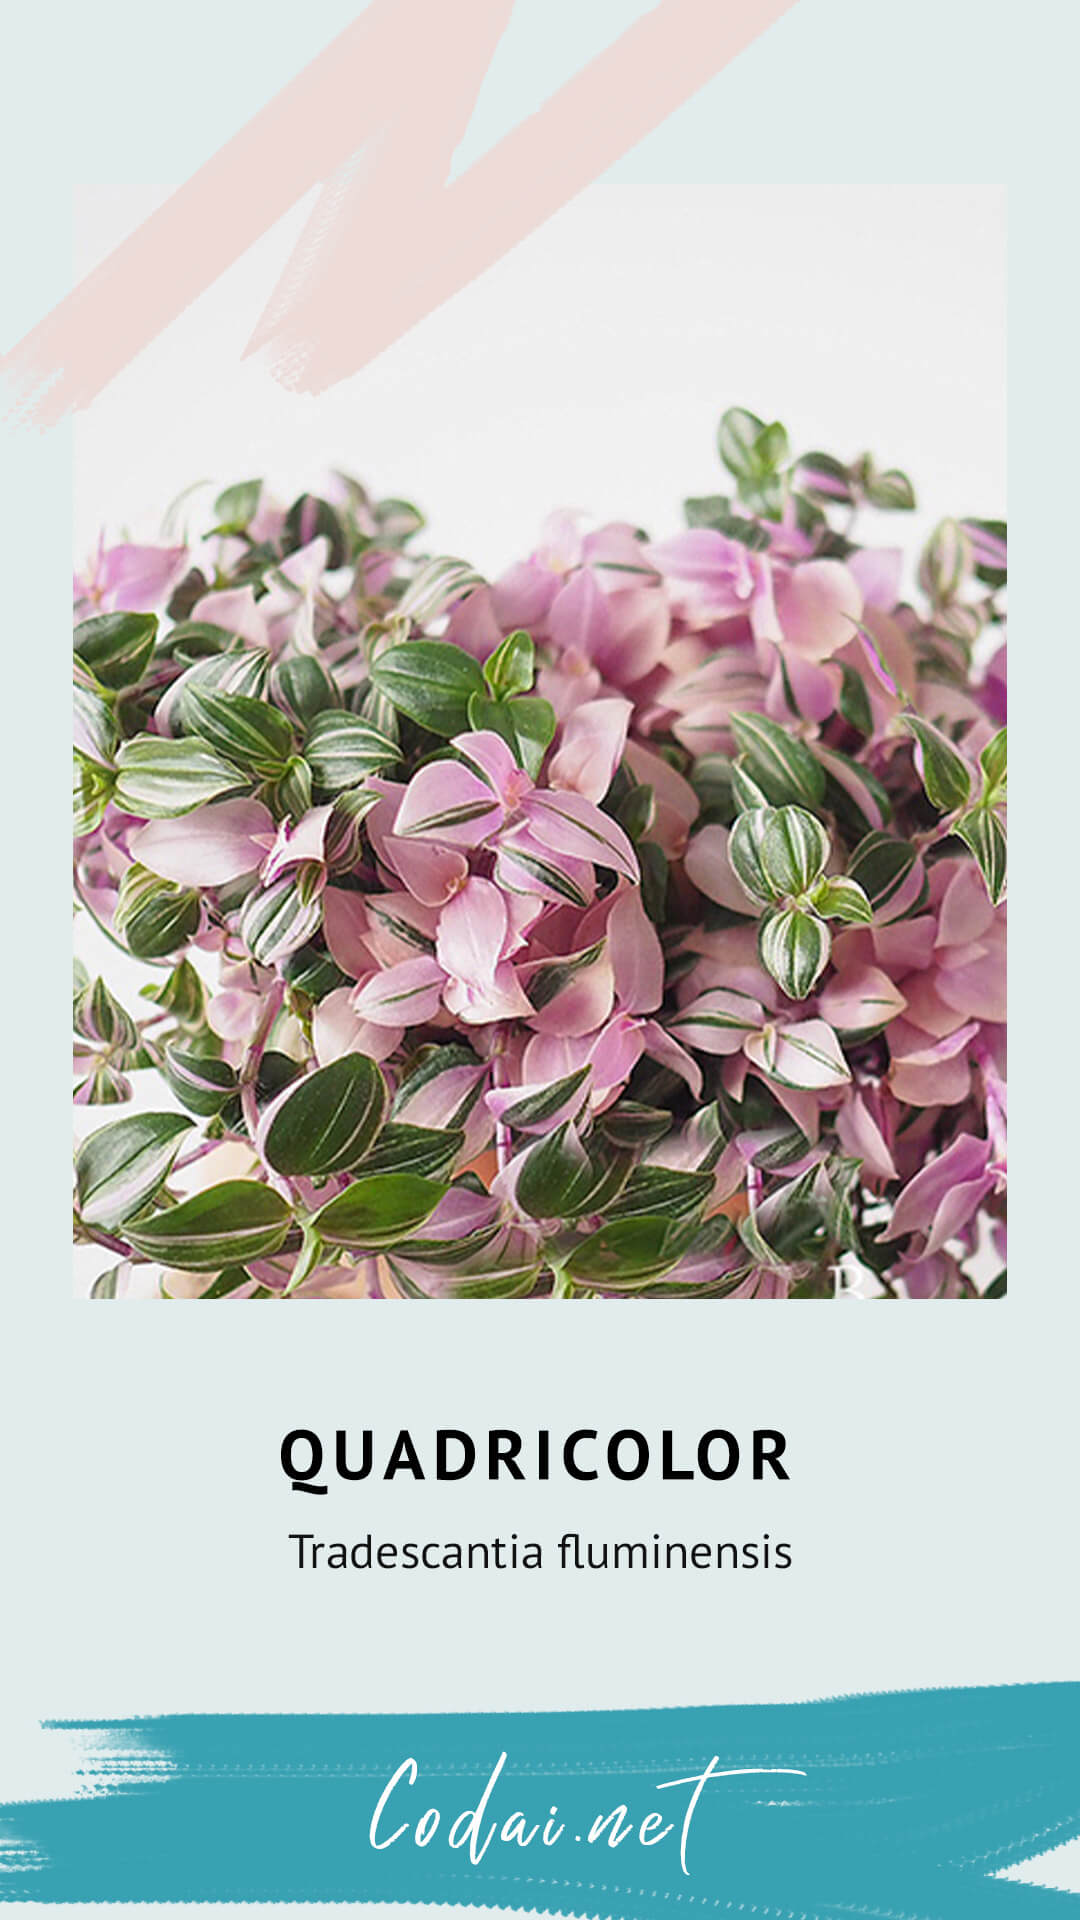 Cây Tradescantia fluminensis Quadricolor